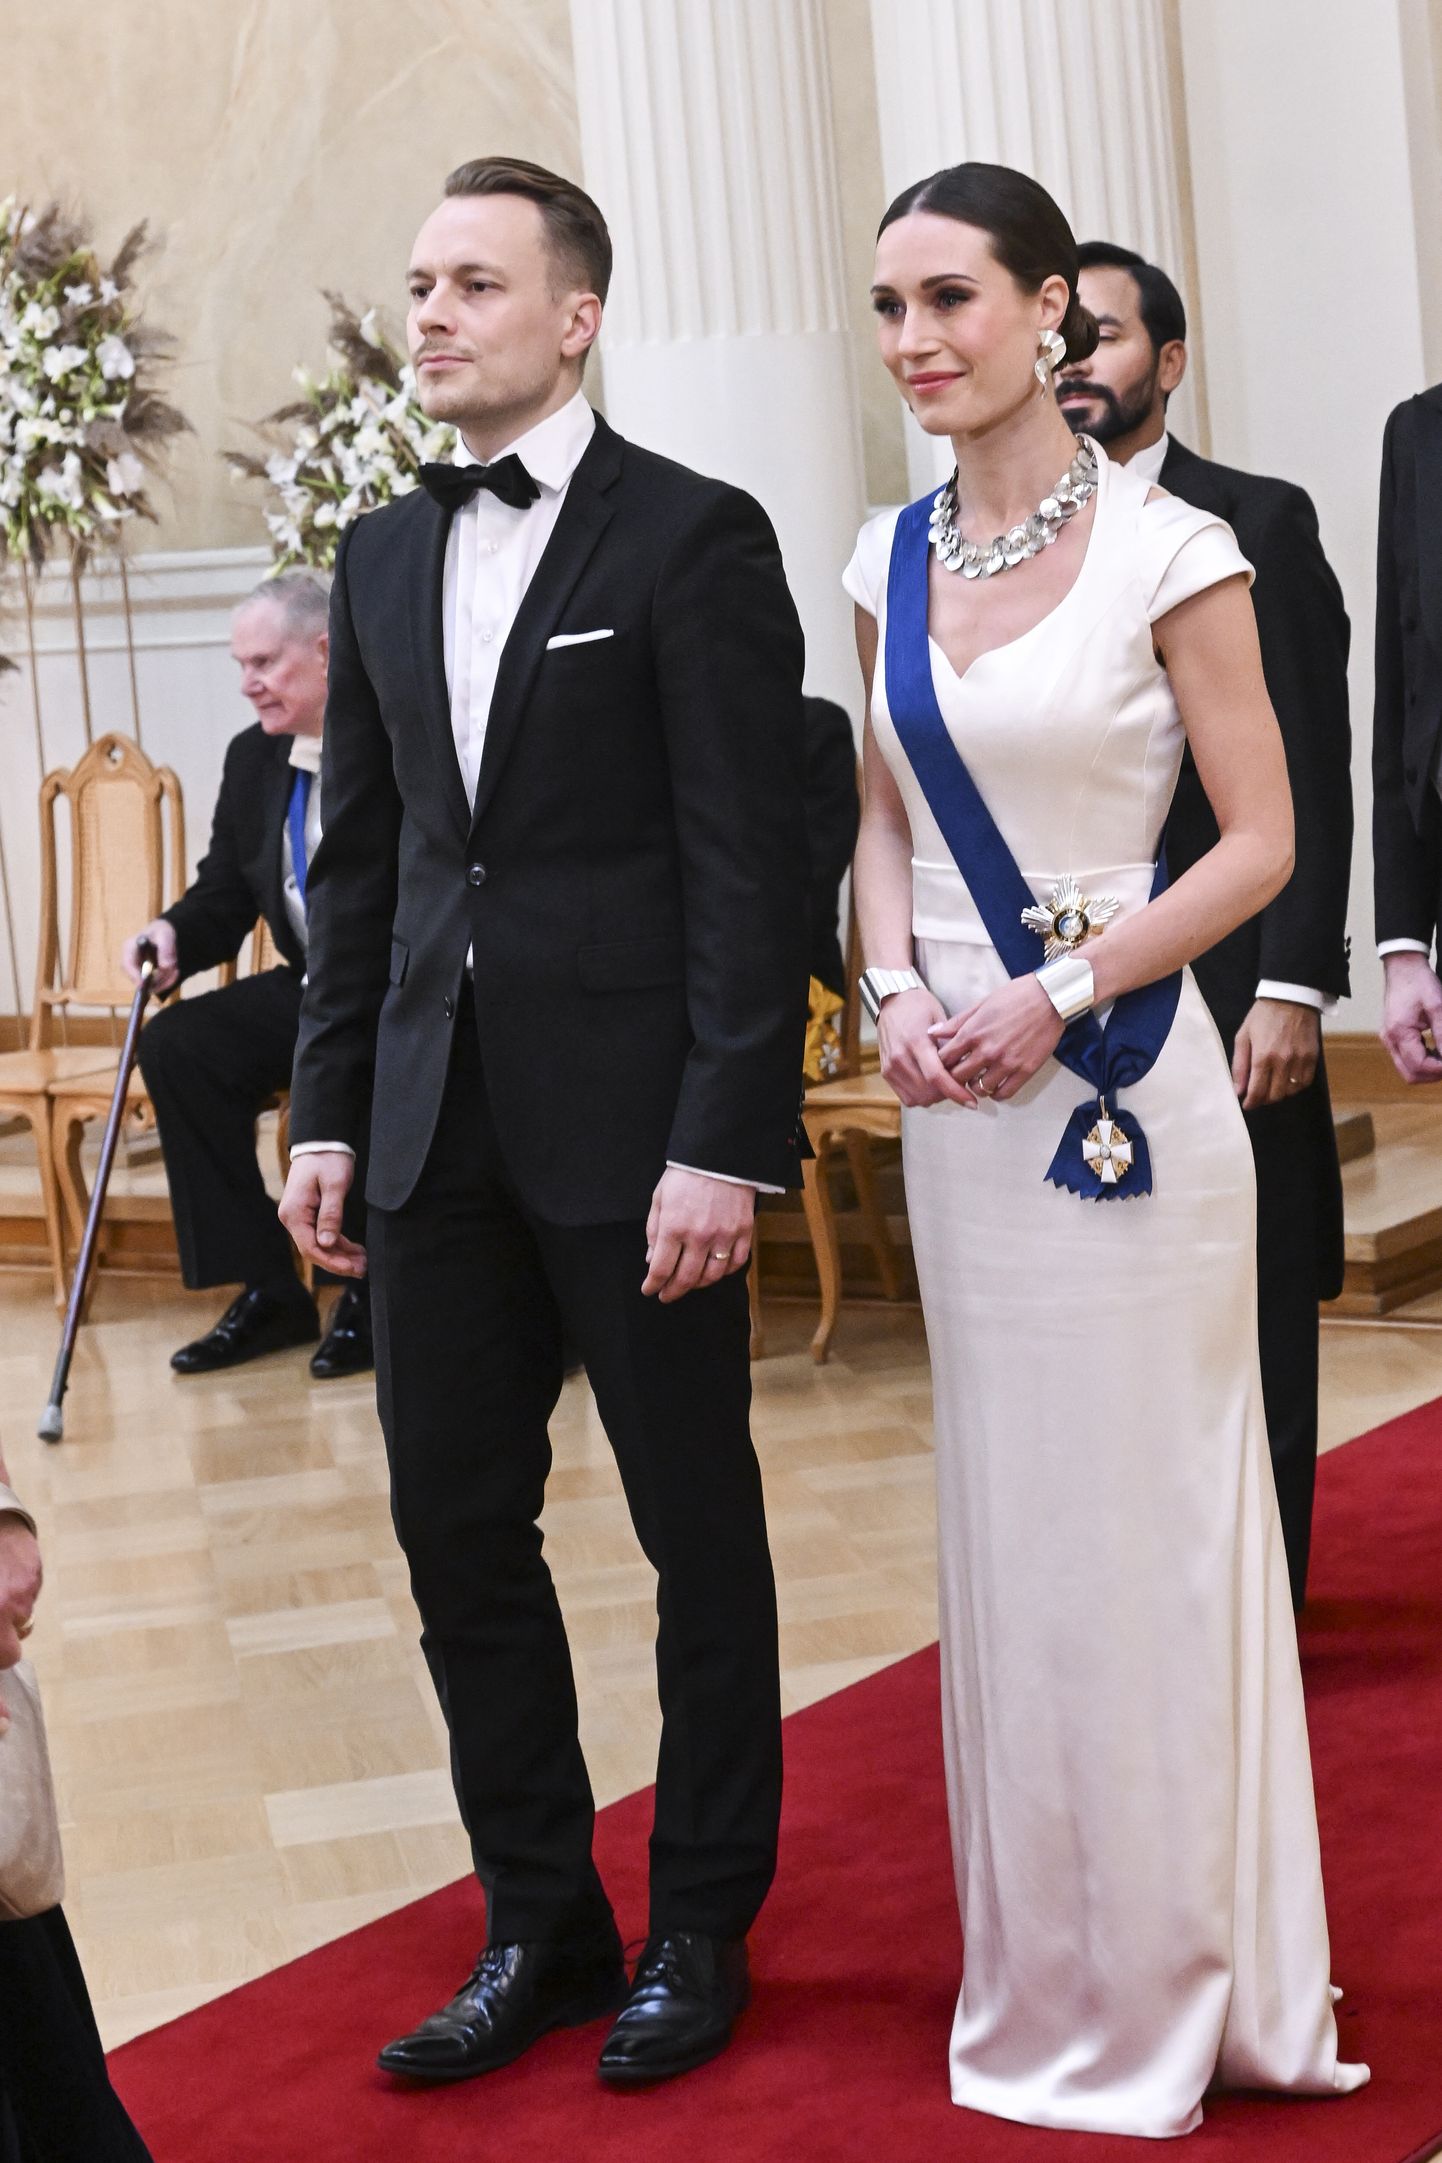 Soome peaminister Sanna Marin ja ta abikaasa Markus Räikkönen 6. detsembril 2022 Helsingis presidendipalees Soome Vabariigi aastapäeva vastuvõtul